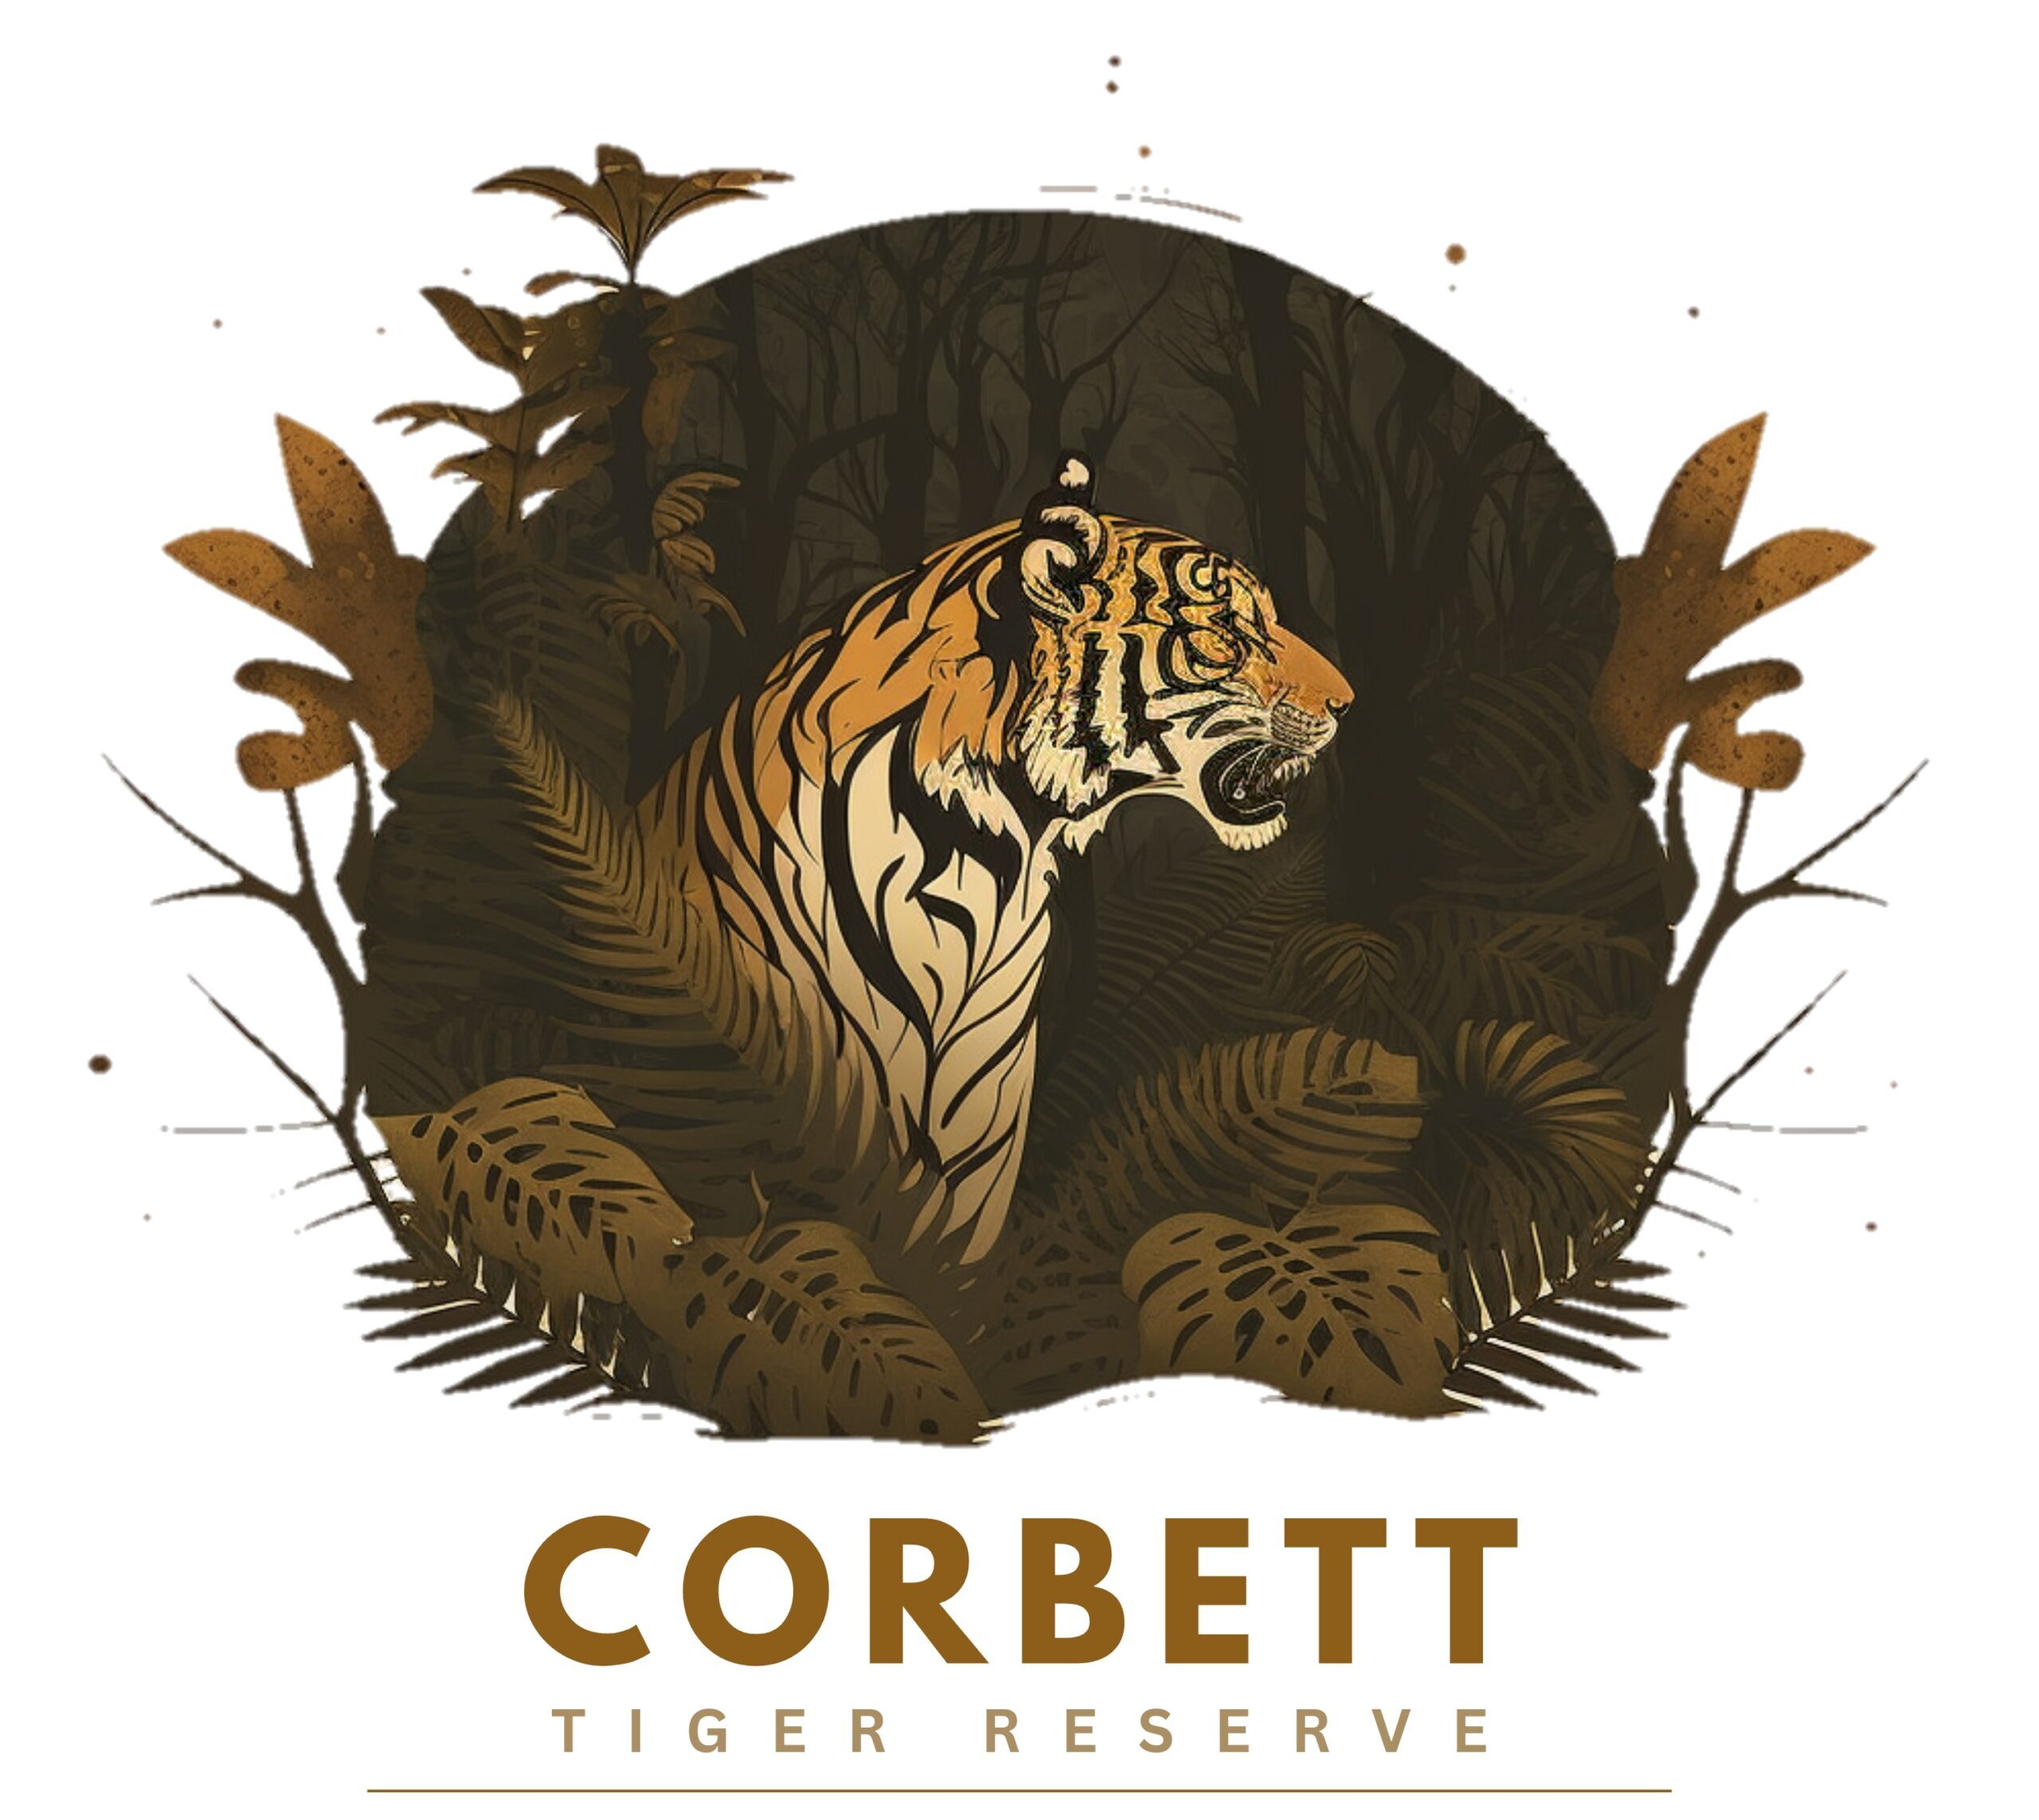 Corbett Safari Booking